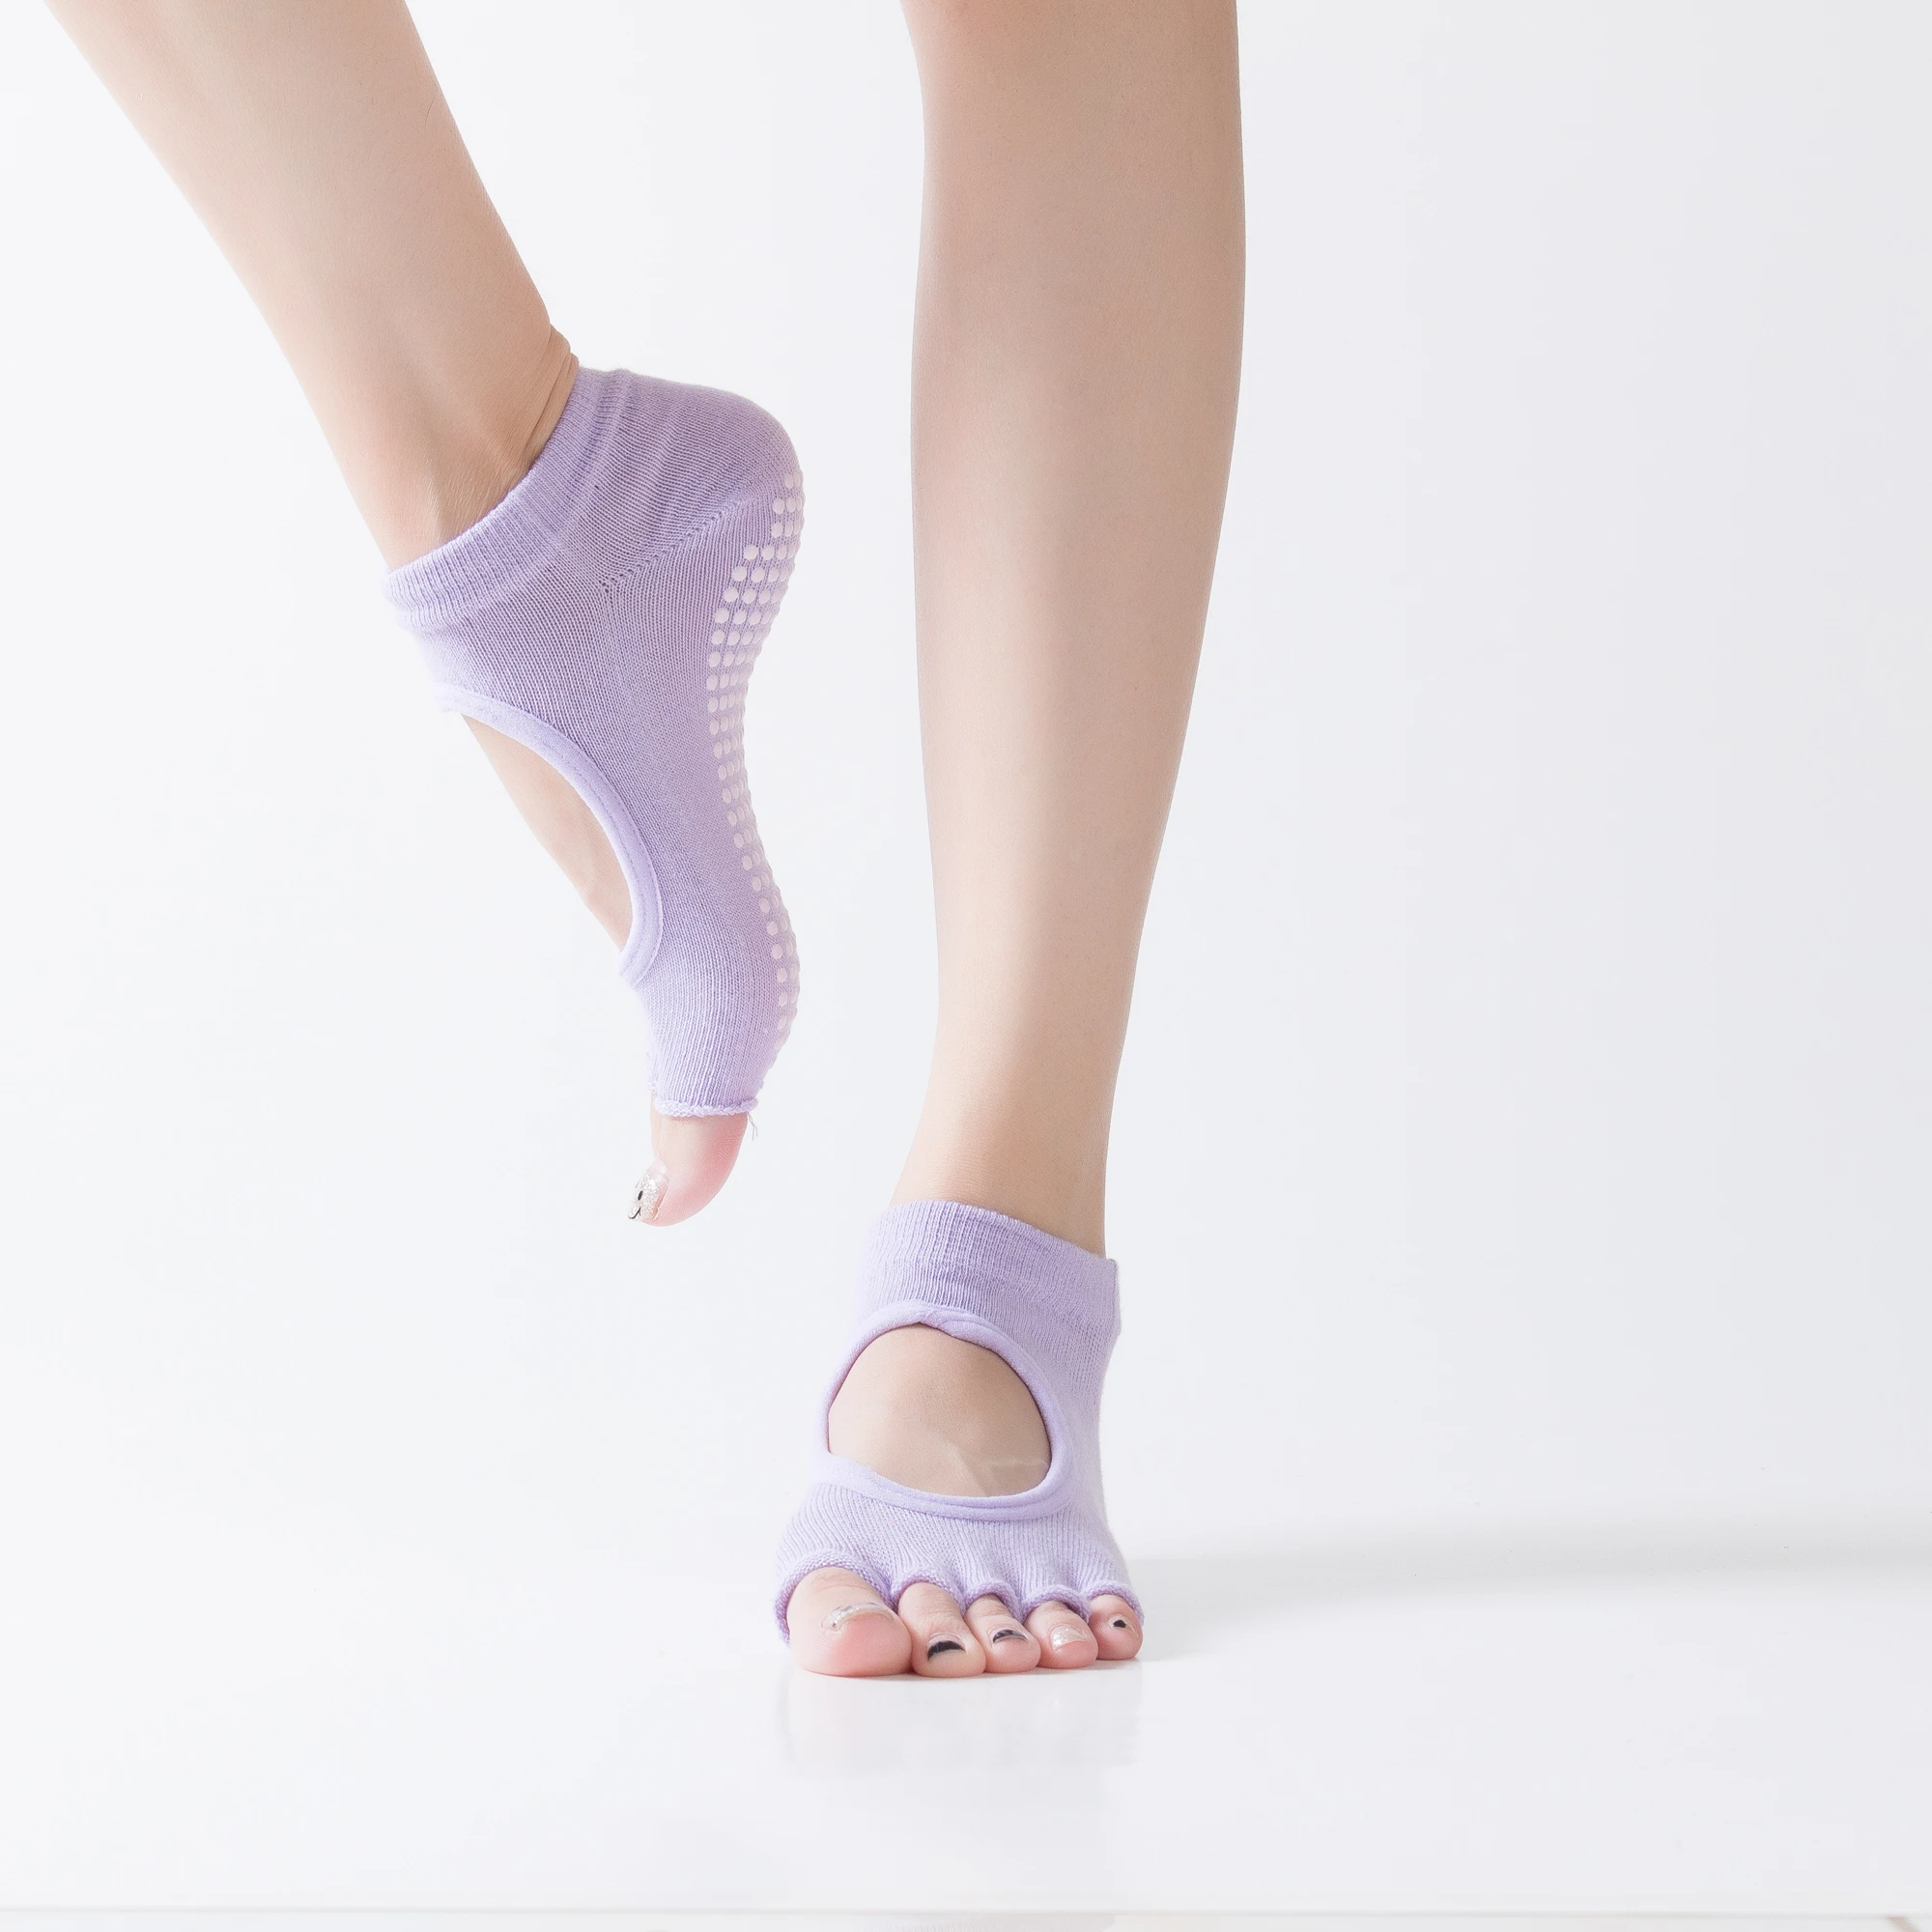 2020 New Arrival Fitness Anti-slip Dance Yoga Pilates Socks